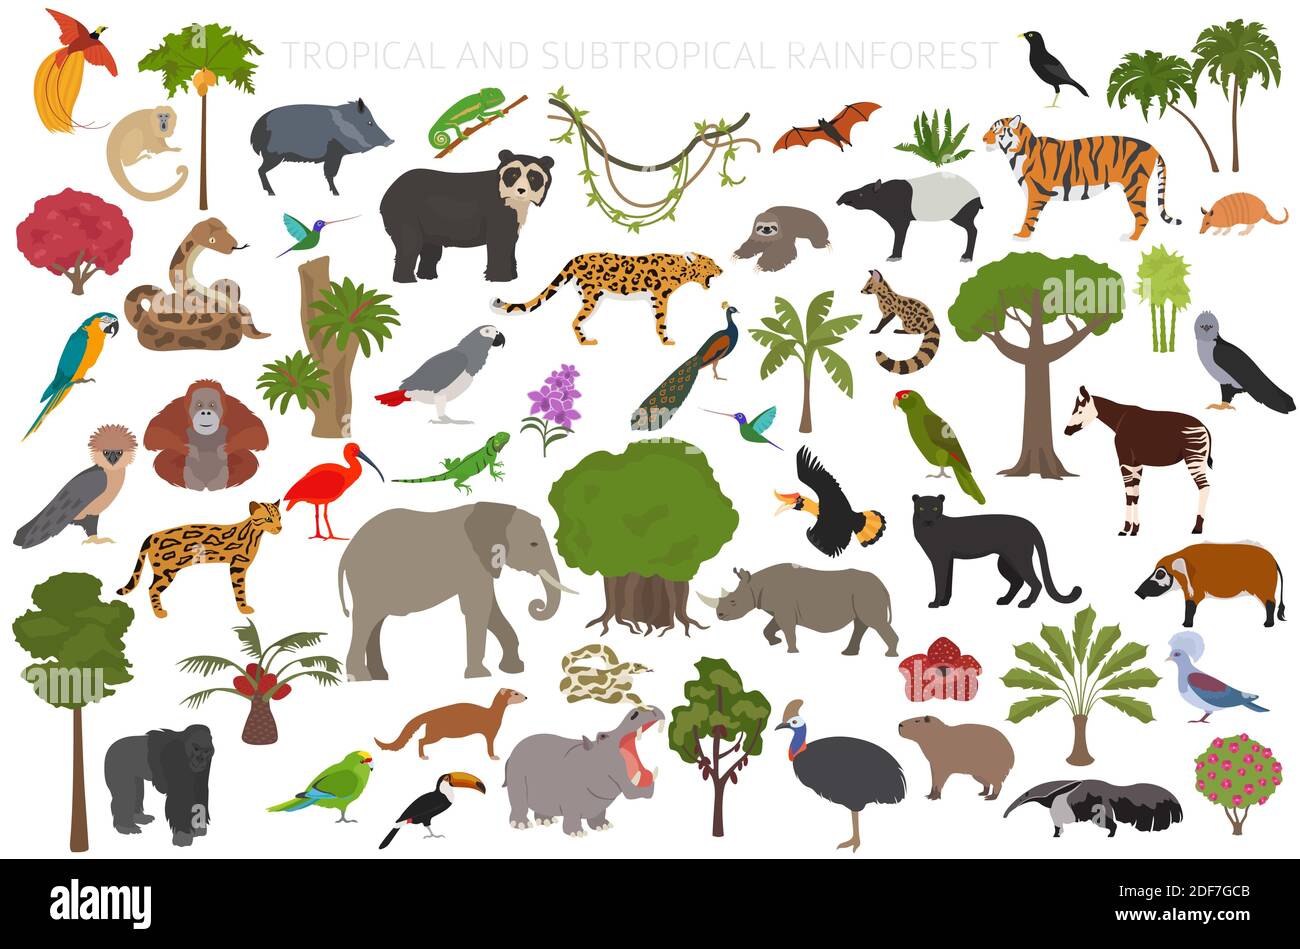 rainforest biome animals